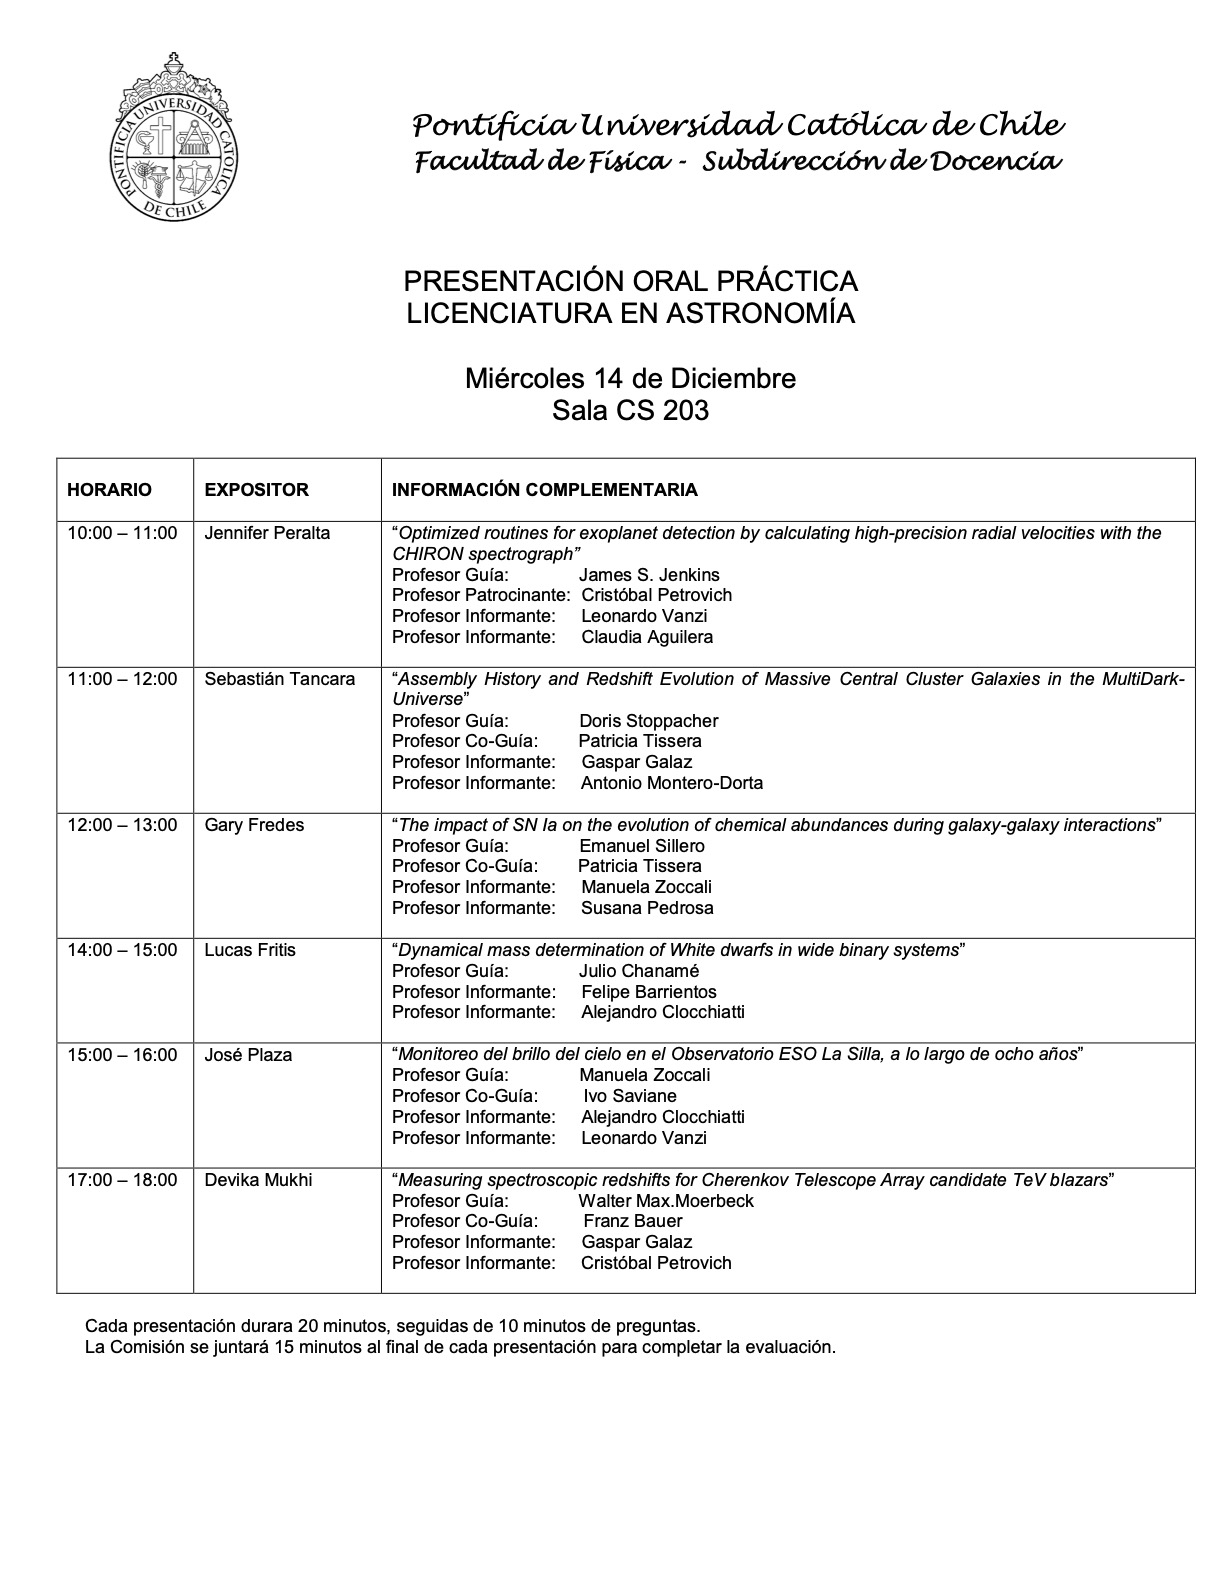 Calendarios de presentación de prácticas de Licenciatura en Astronomía (14 y 15 de diciembre)